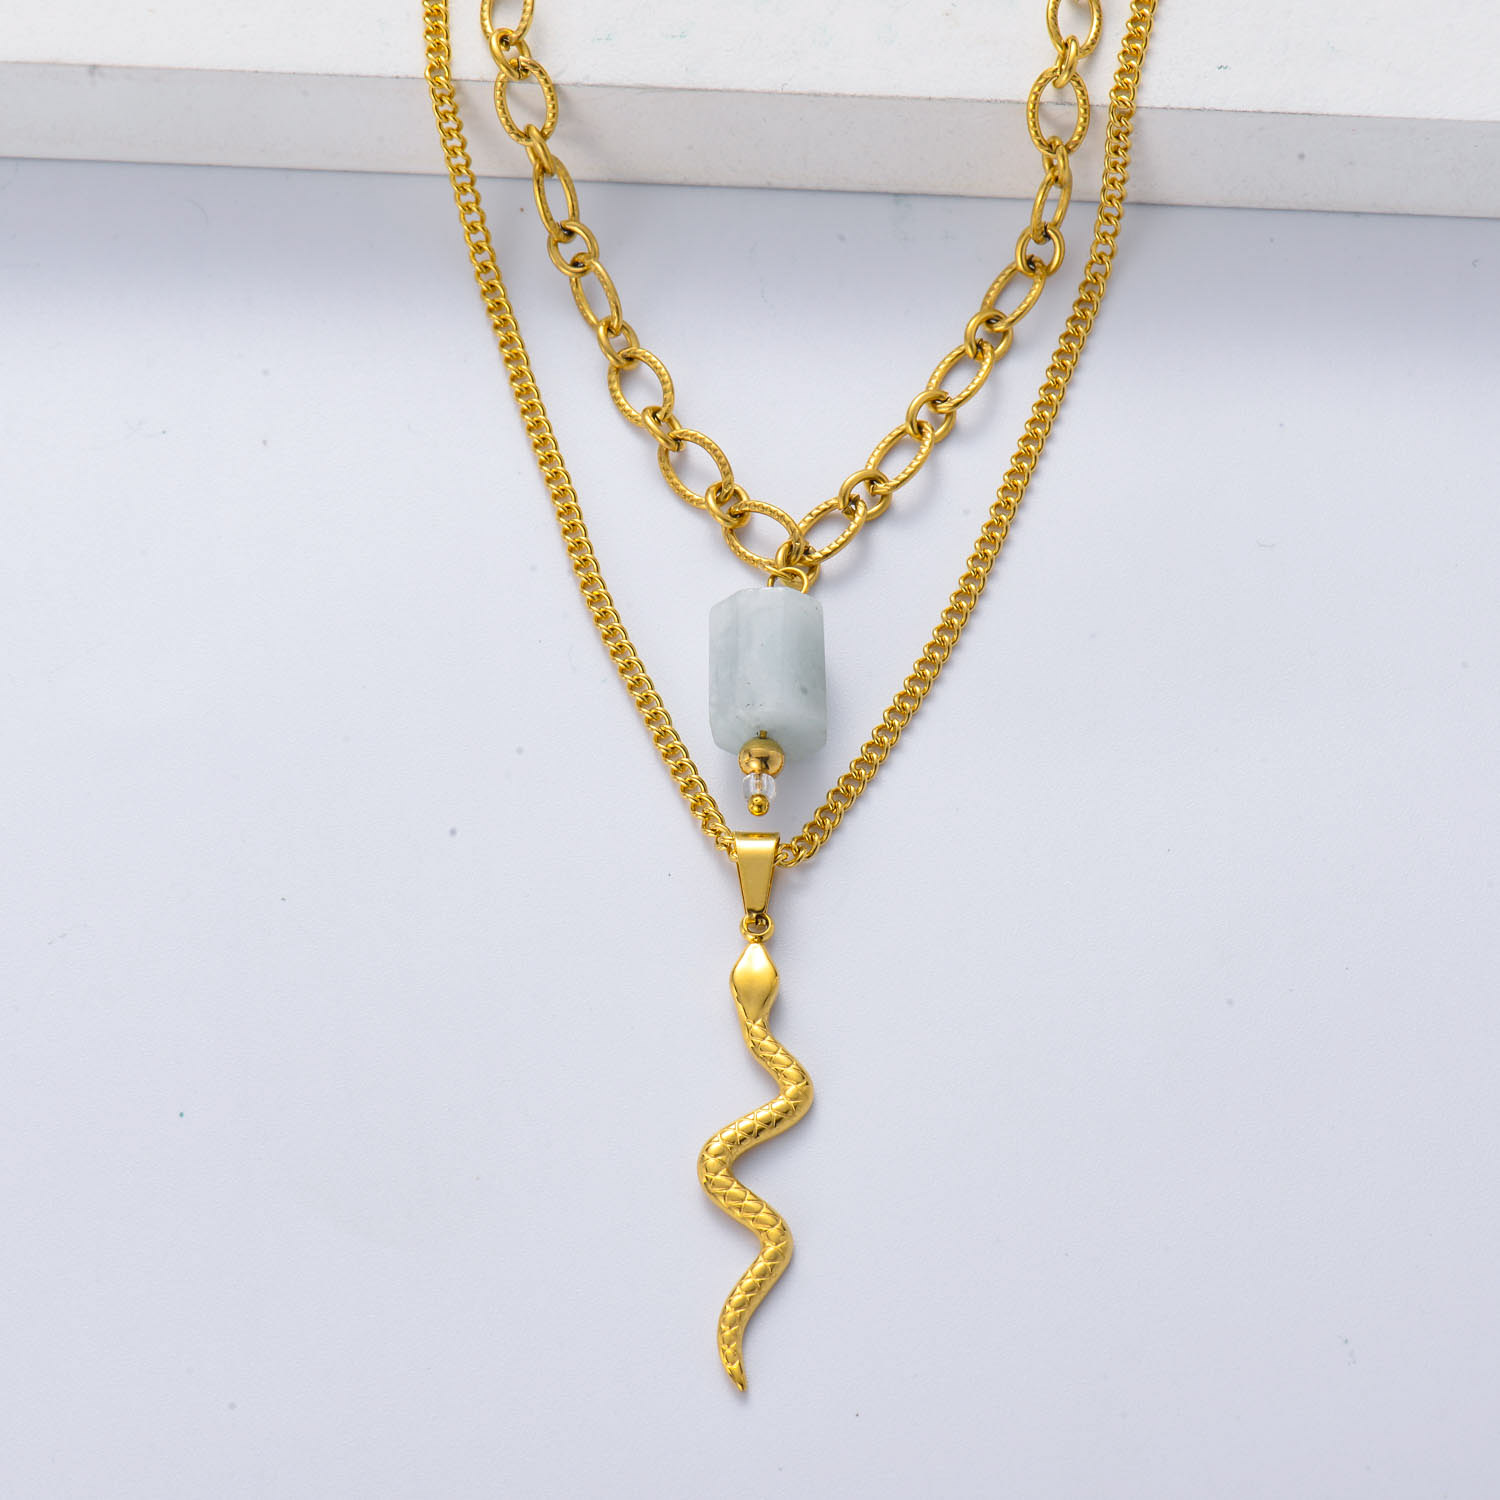 collar de serpiente acero color dorado doble cadena con piedra natural semi precious aguamarina estilo en moda para mujer